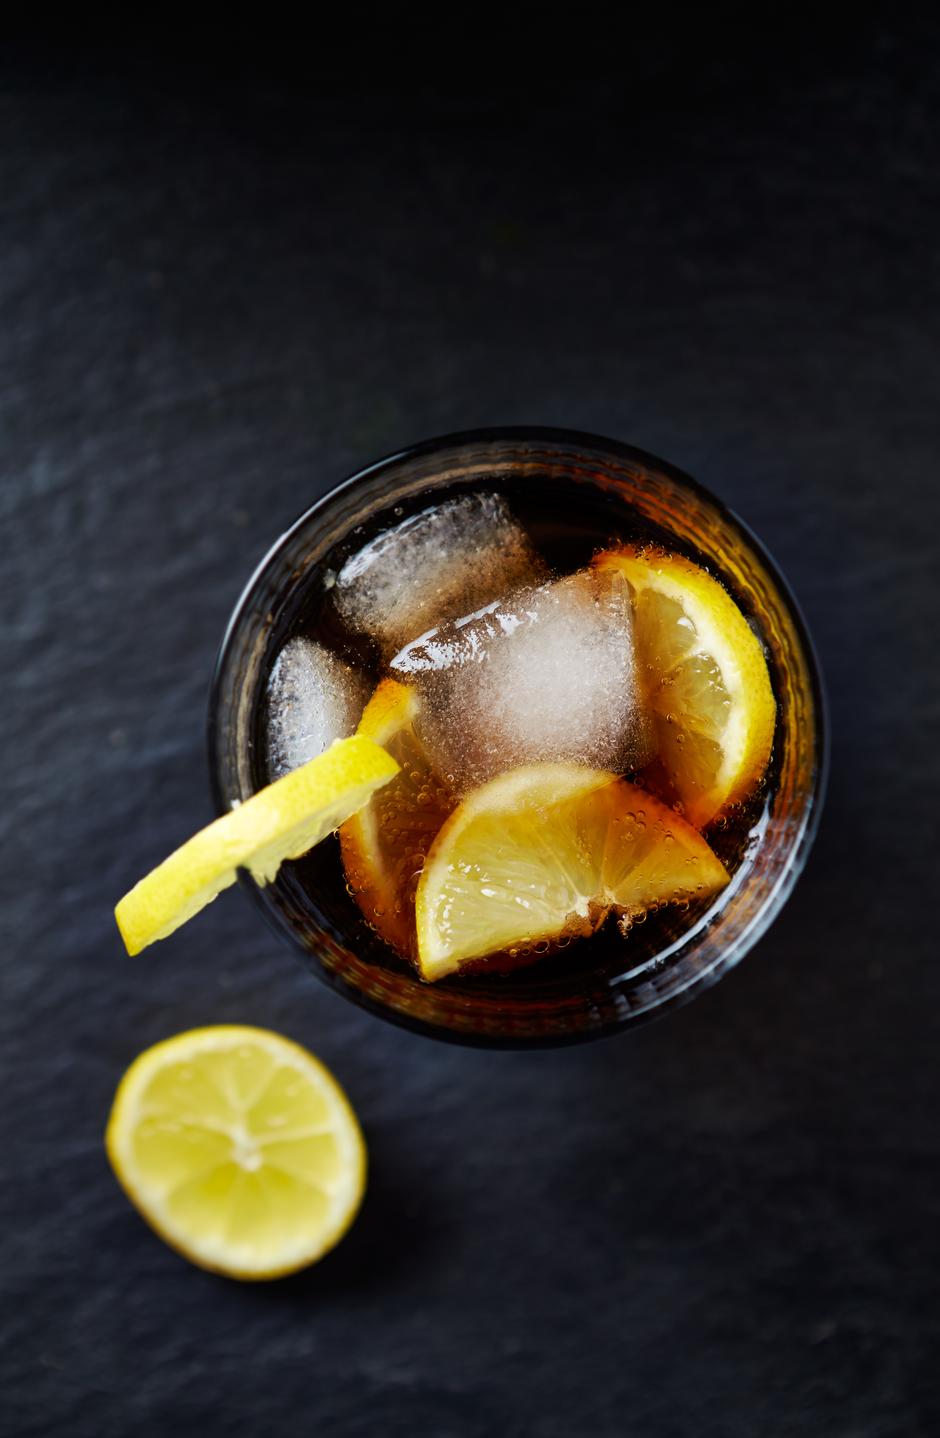 Čaša gaziranog soka s limunom i ledom | Author: Thinkstock